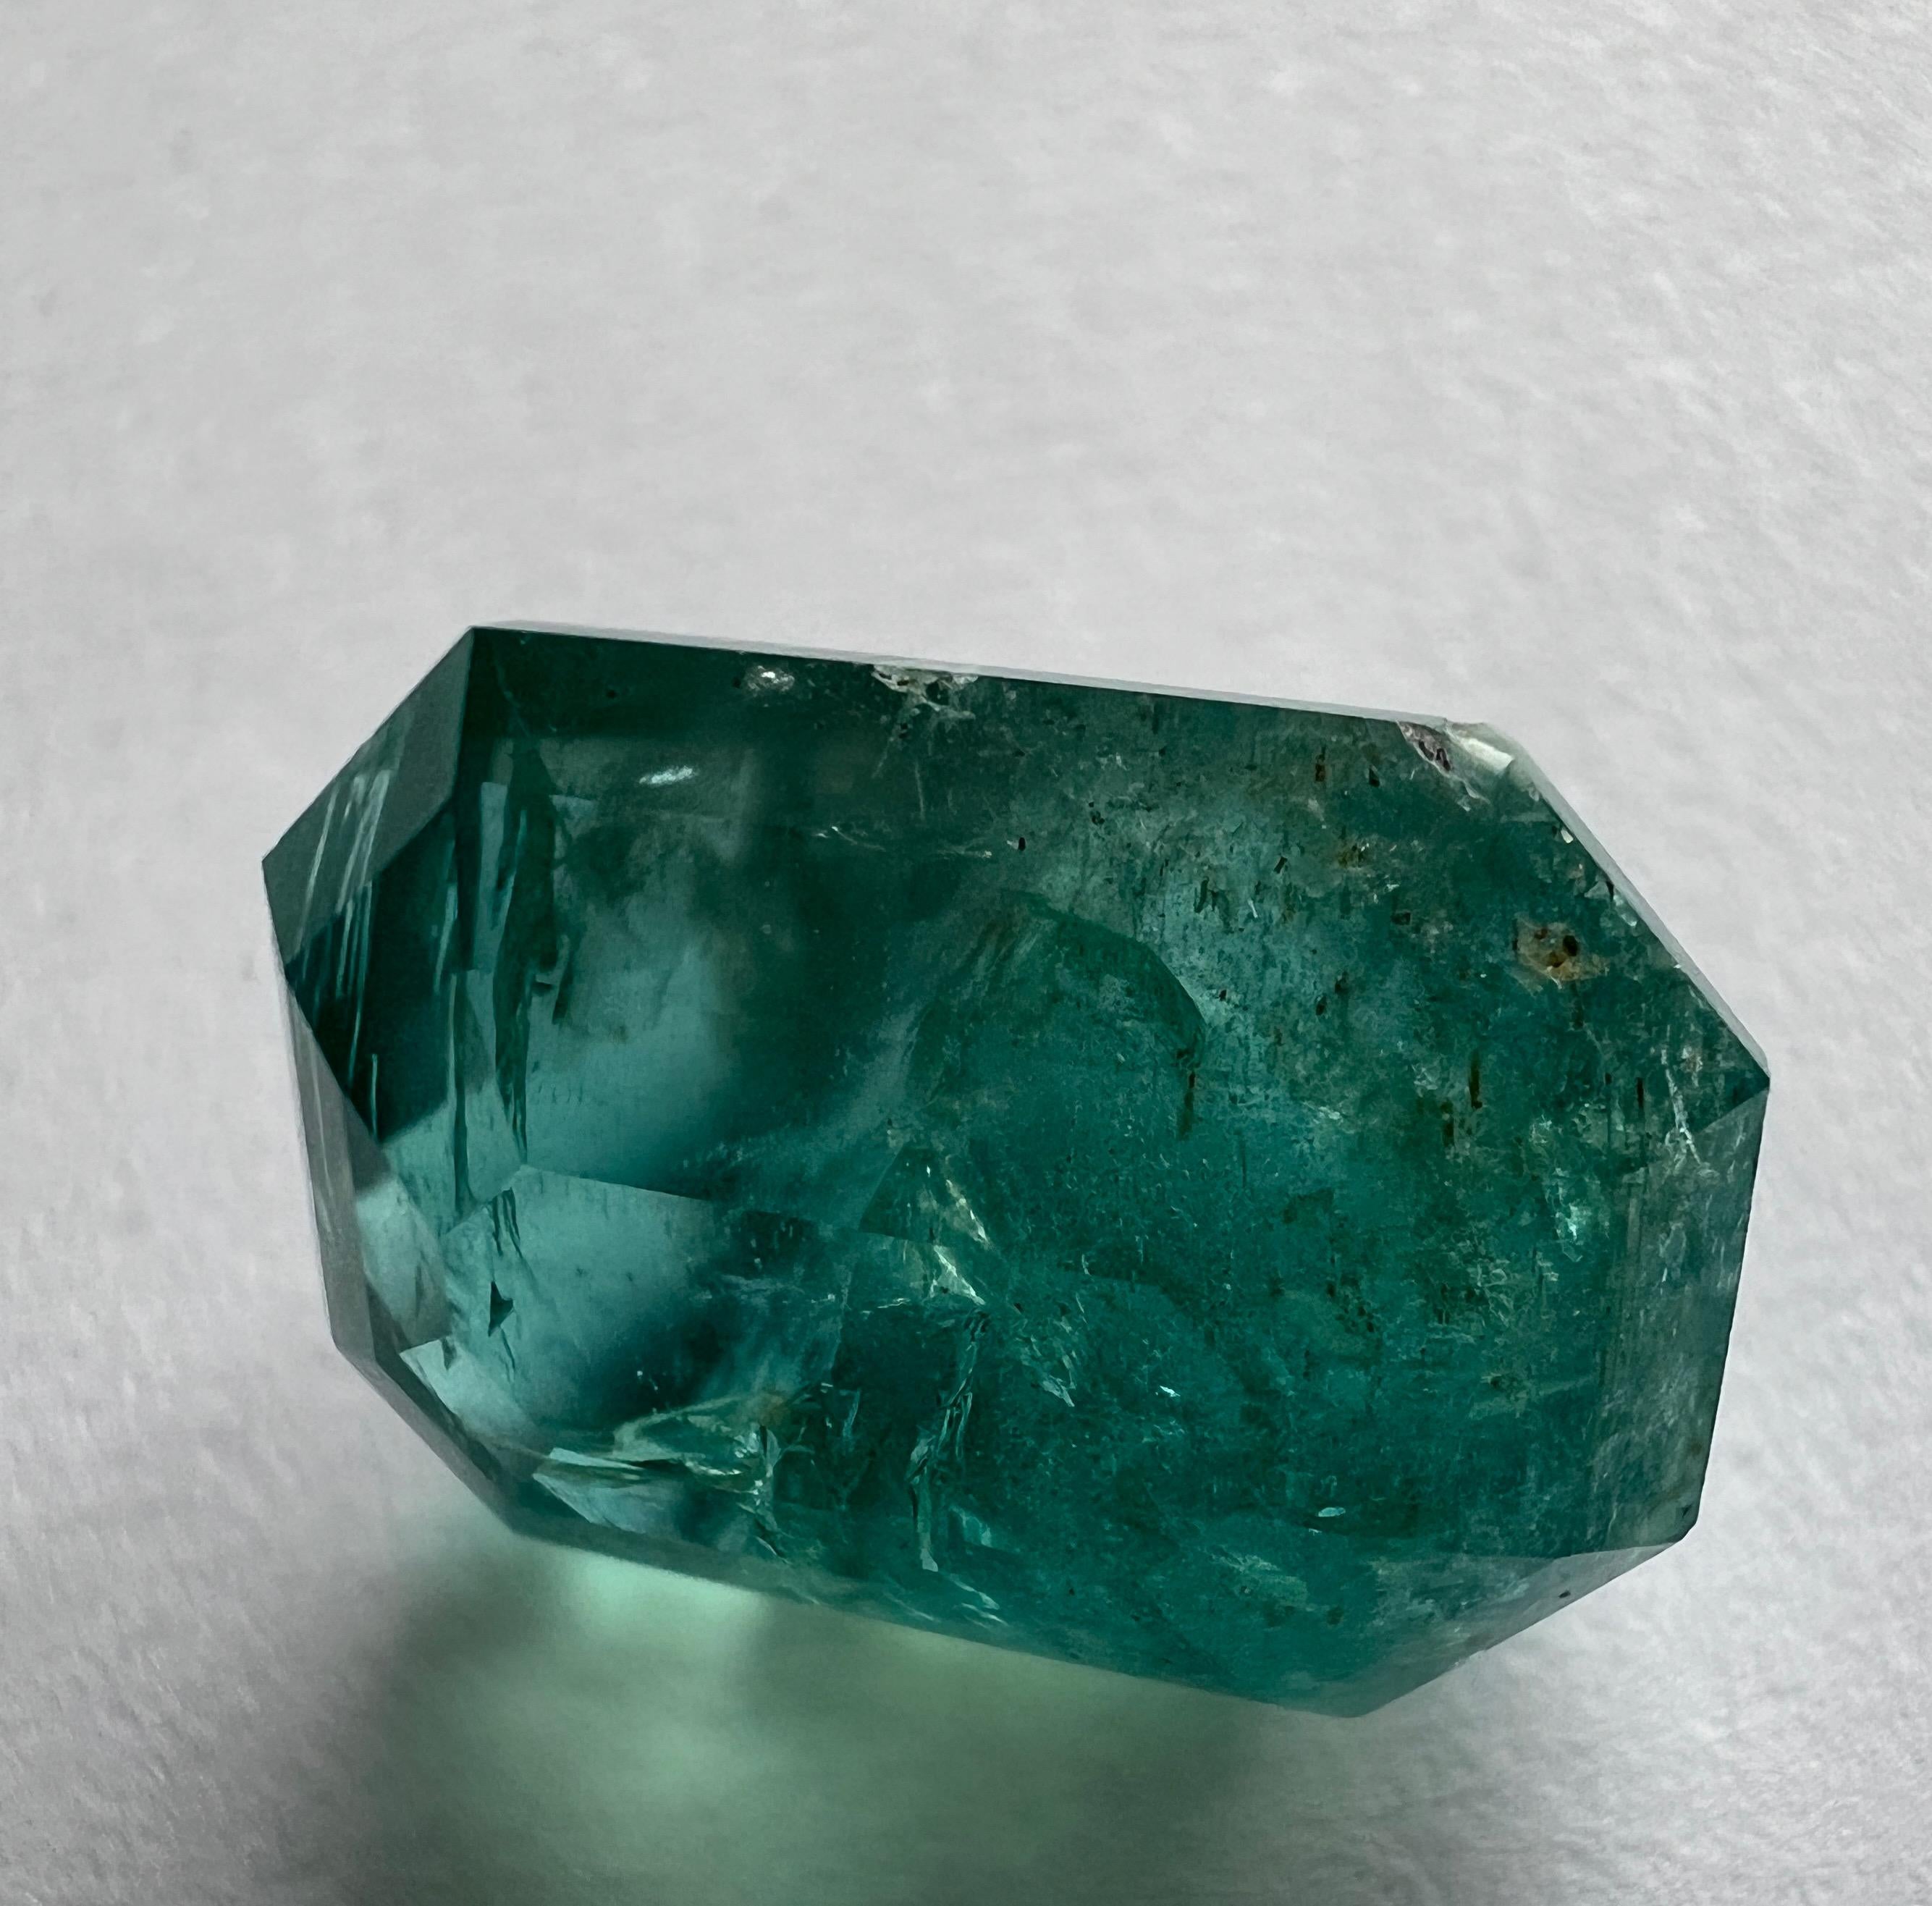 Enthüllen Sie den Reiz der Schönheit der Natur mit unserem atemberaubenden 10,90ct Natural No-Oil Green Emerald Edelstein. Dieser Smaragd, der mit größter Sorgfalt beschafft und verarbeitet wurde, steht für Authentizität und Raffinesse.

Wesentliche